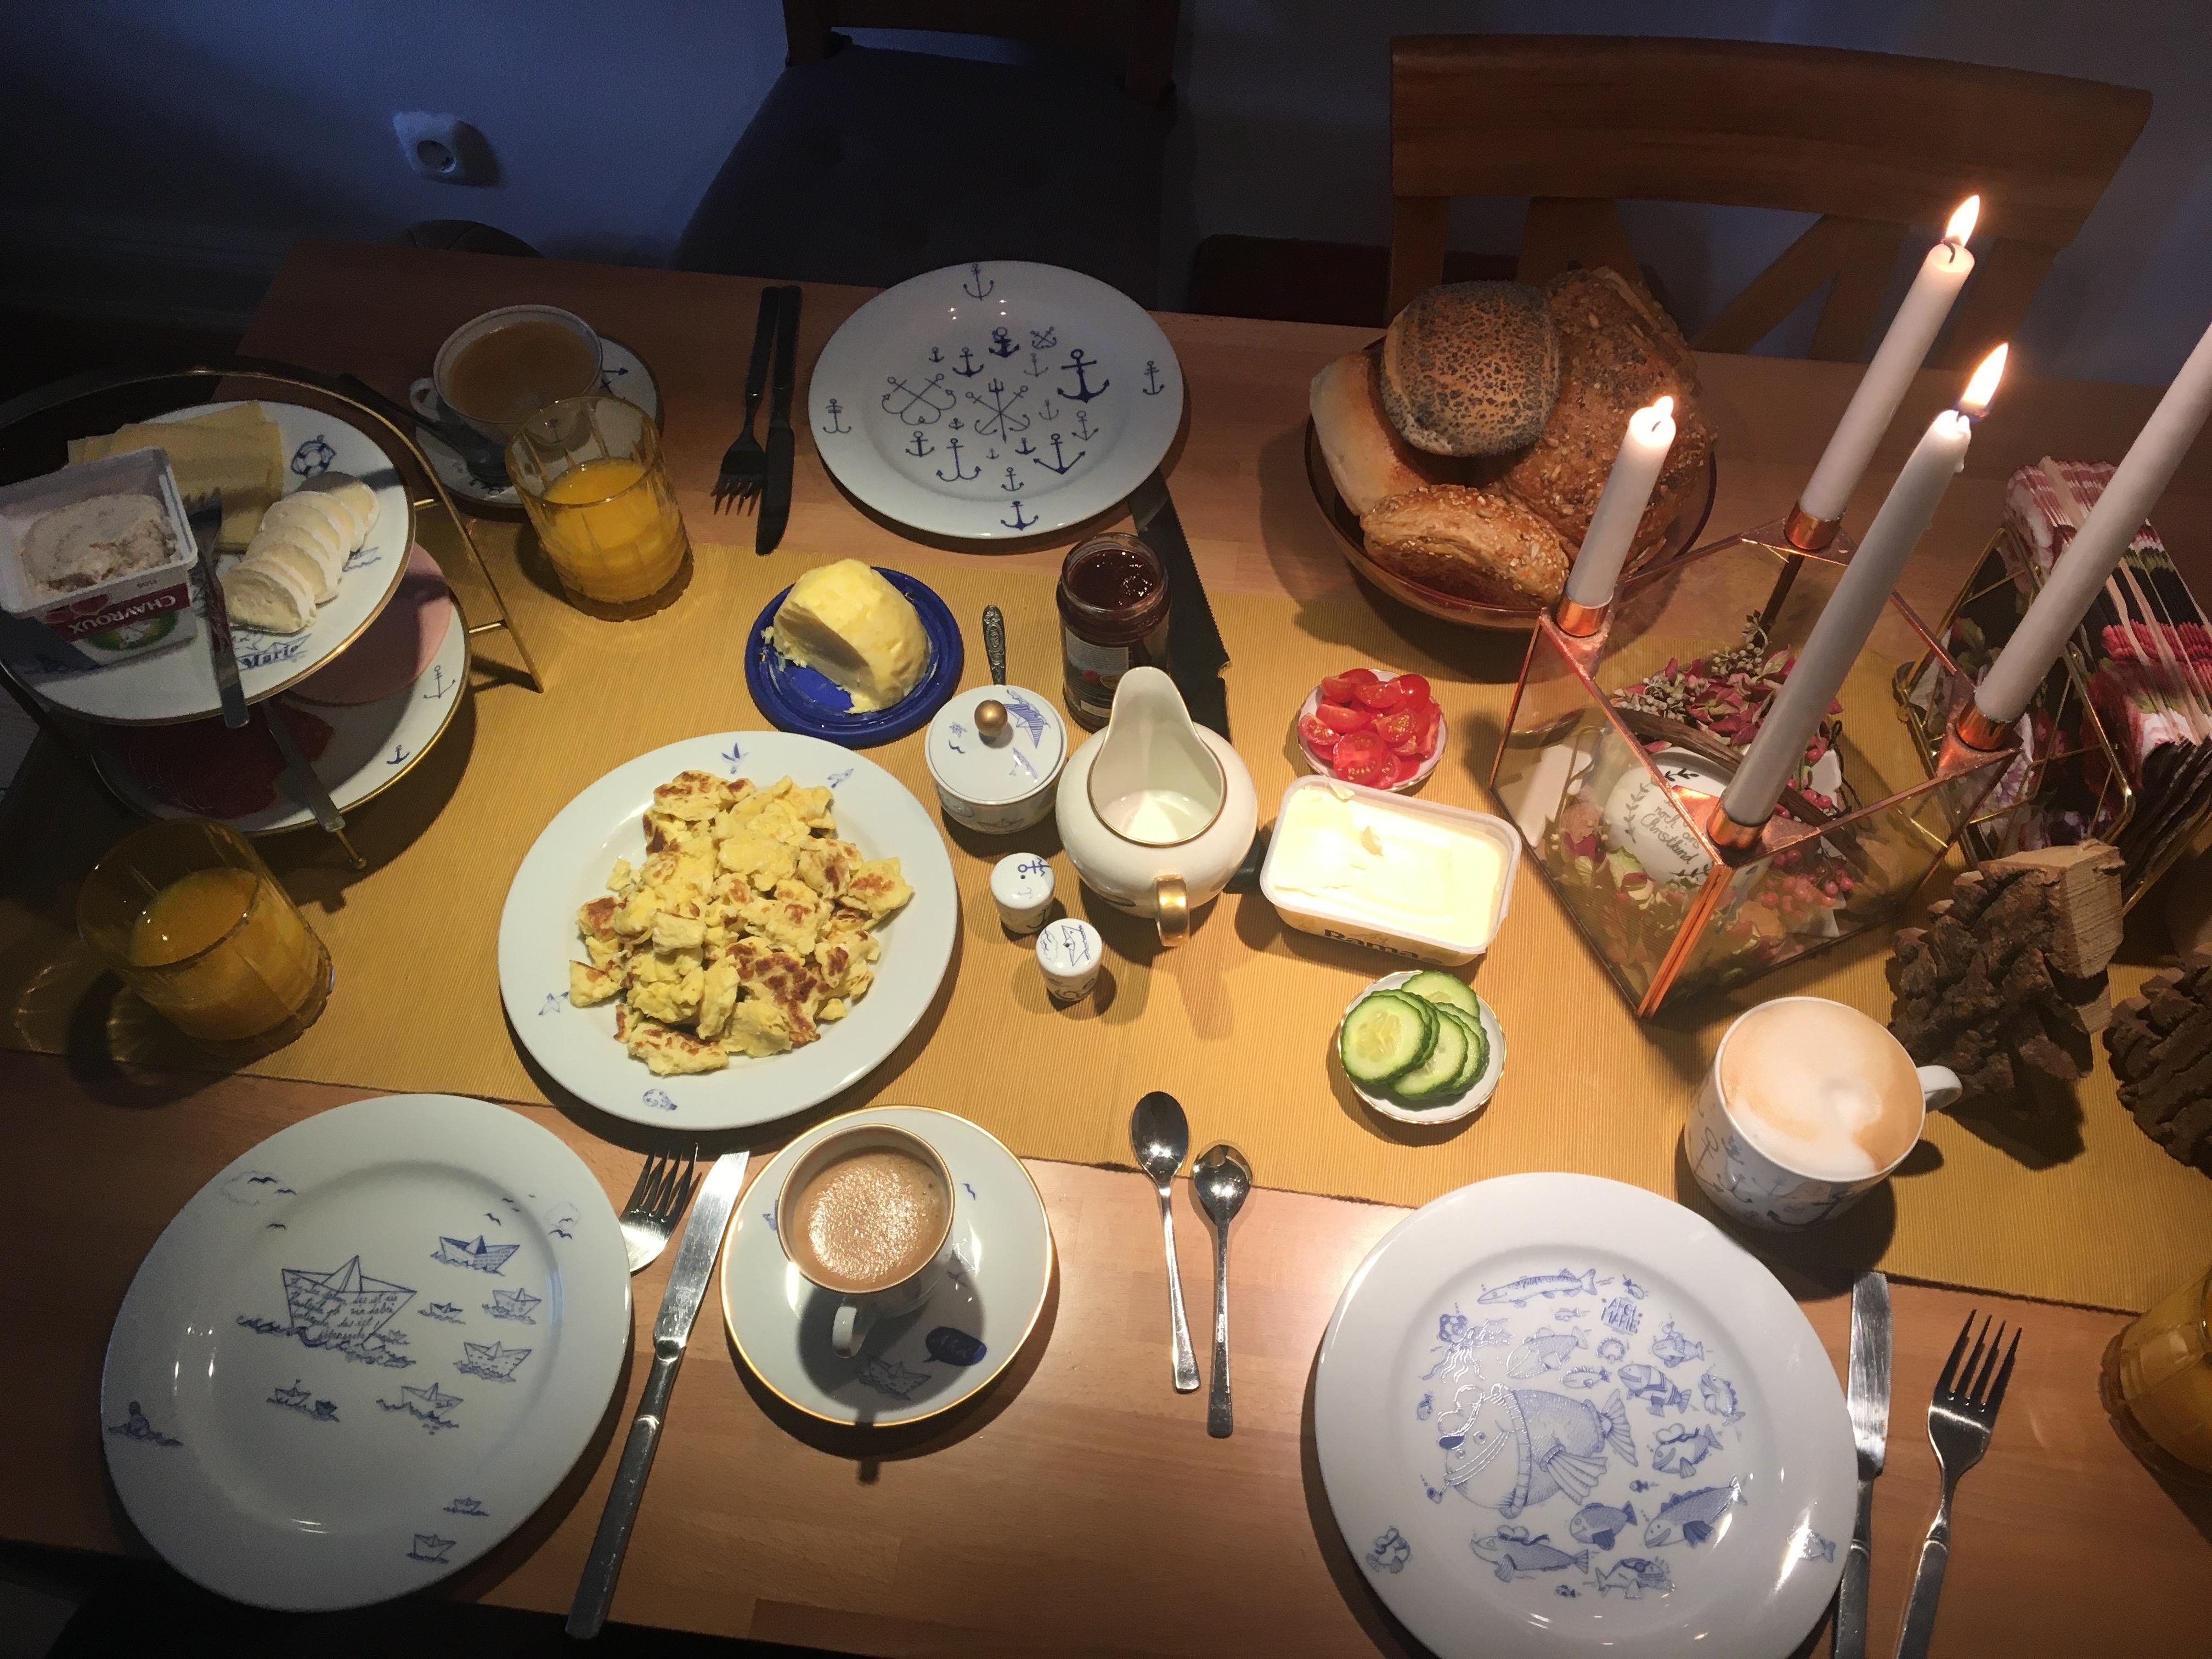 Zwar schon etwas her, aber im Moment frühstücke ich eher allein... #livingchallenge #frühstückstisch